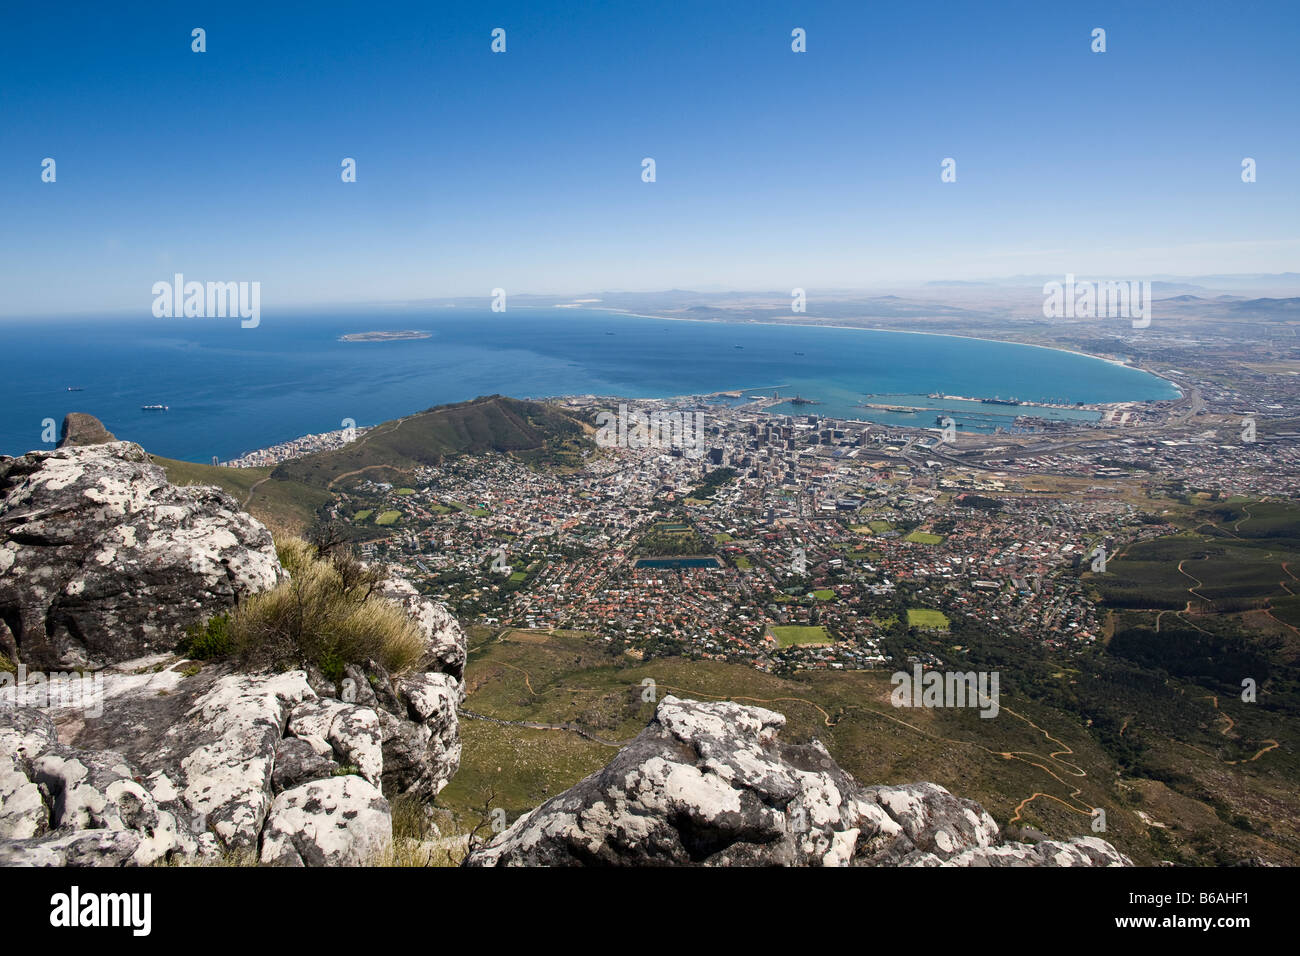 Vue panoramique depuis la montagne de la Table sur la ville de Cape Town Afrique du Sud Banque D'Images